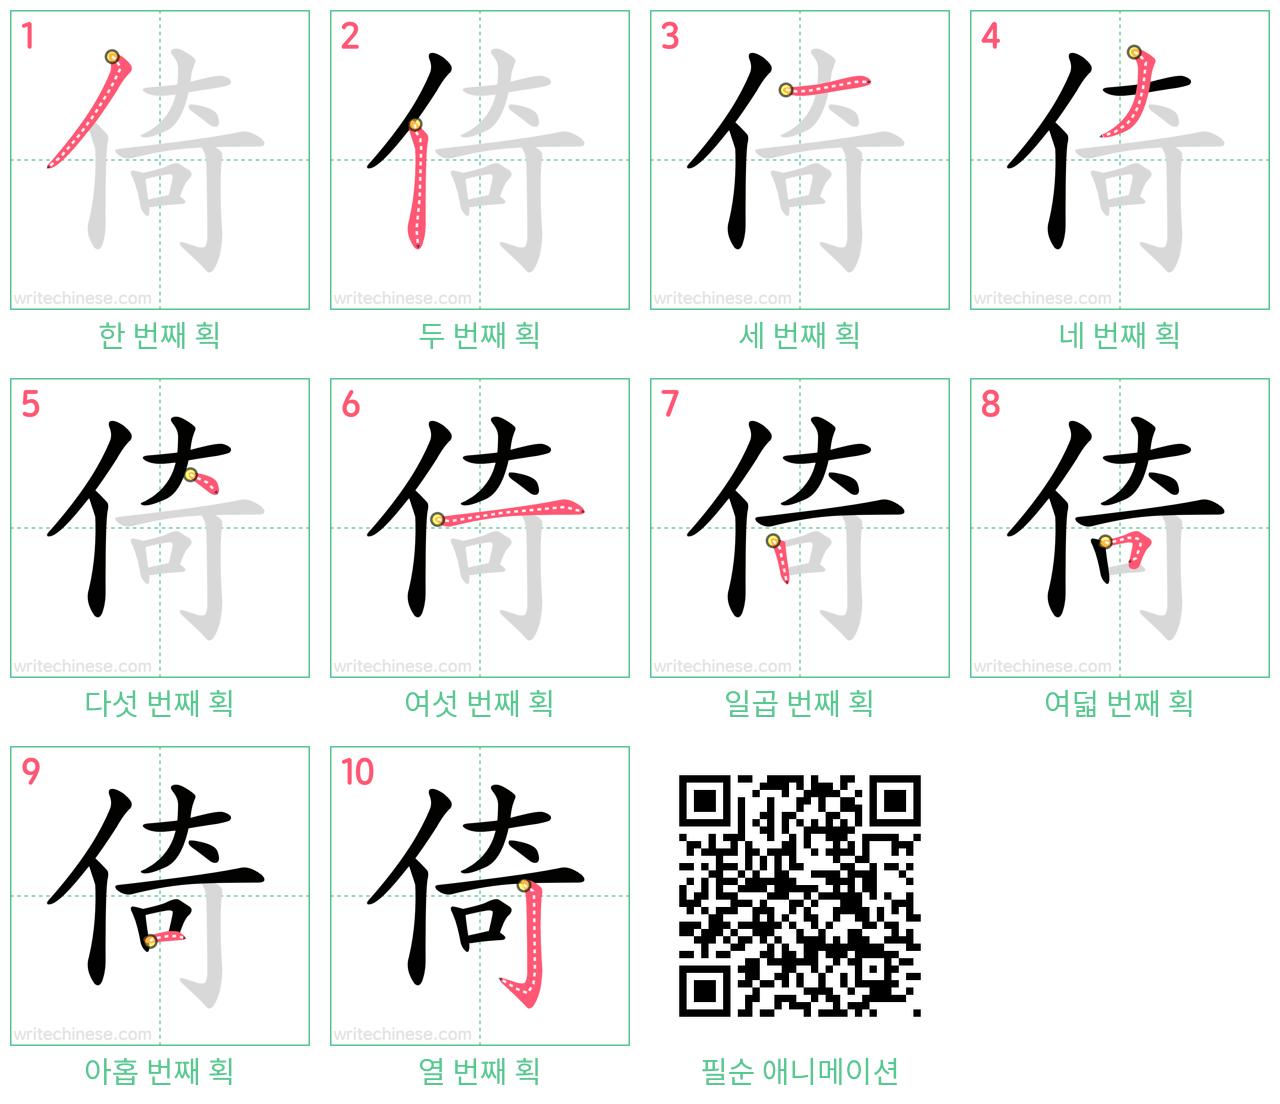 倚 step-by-step stroke order diagrams